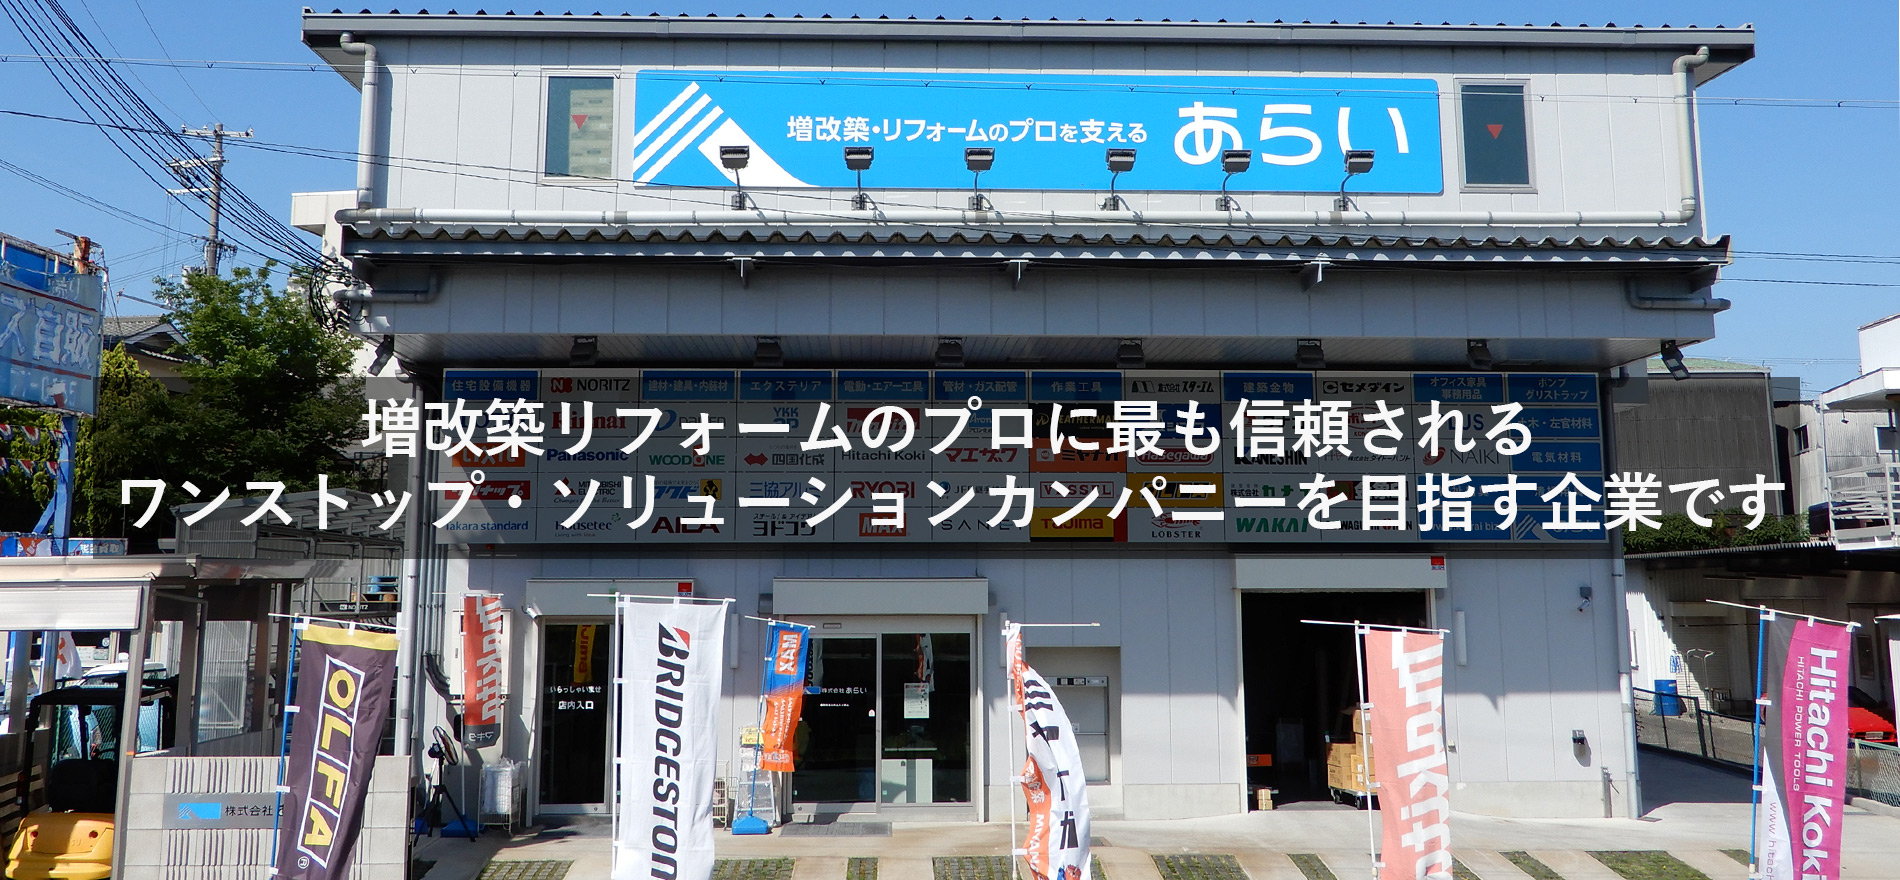 堺市の増改築・リフォームのプロを応援する。それが株式会社あらいです。